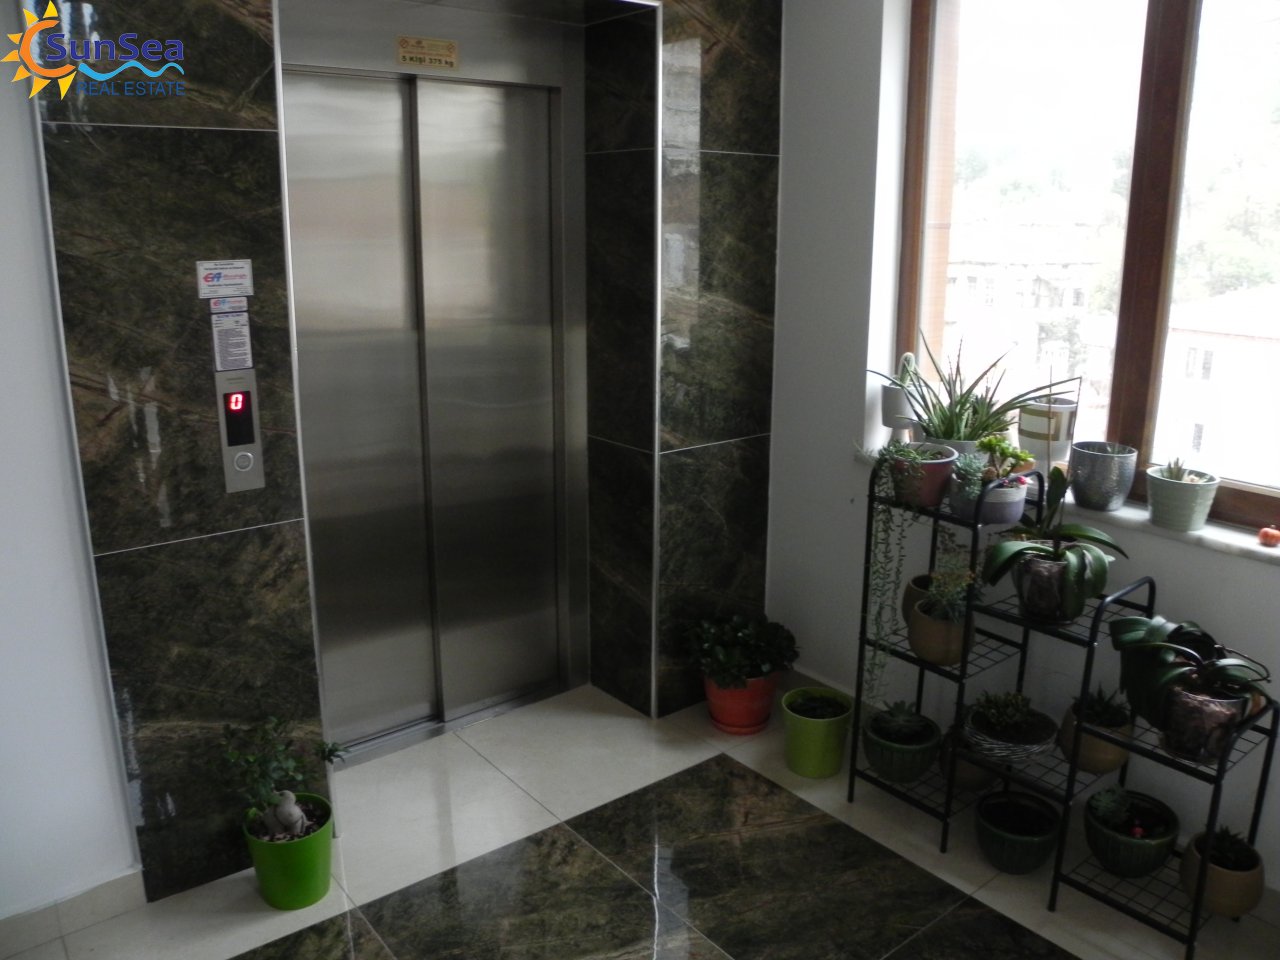 damlatas apartment elevator